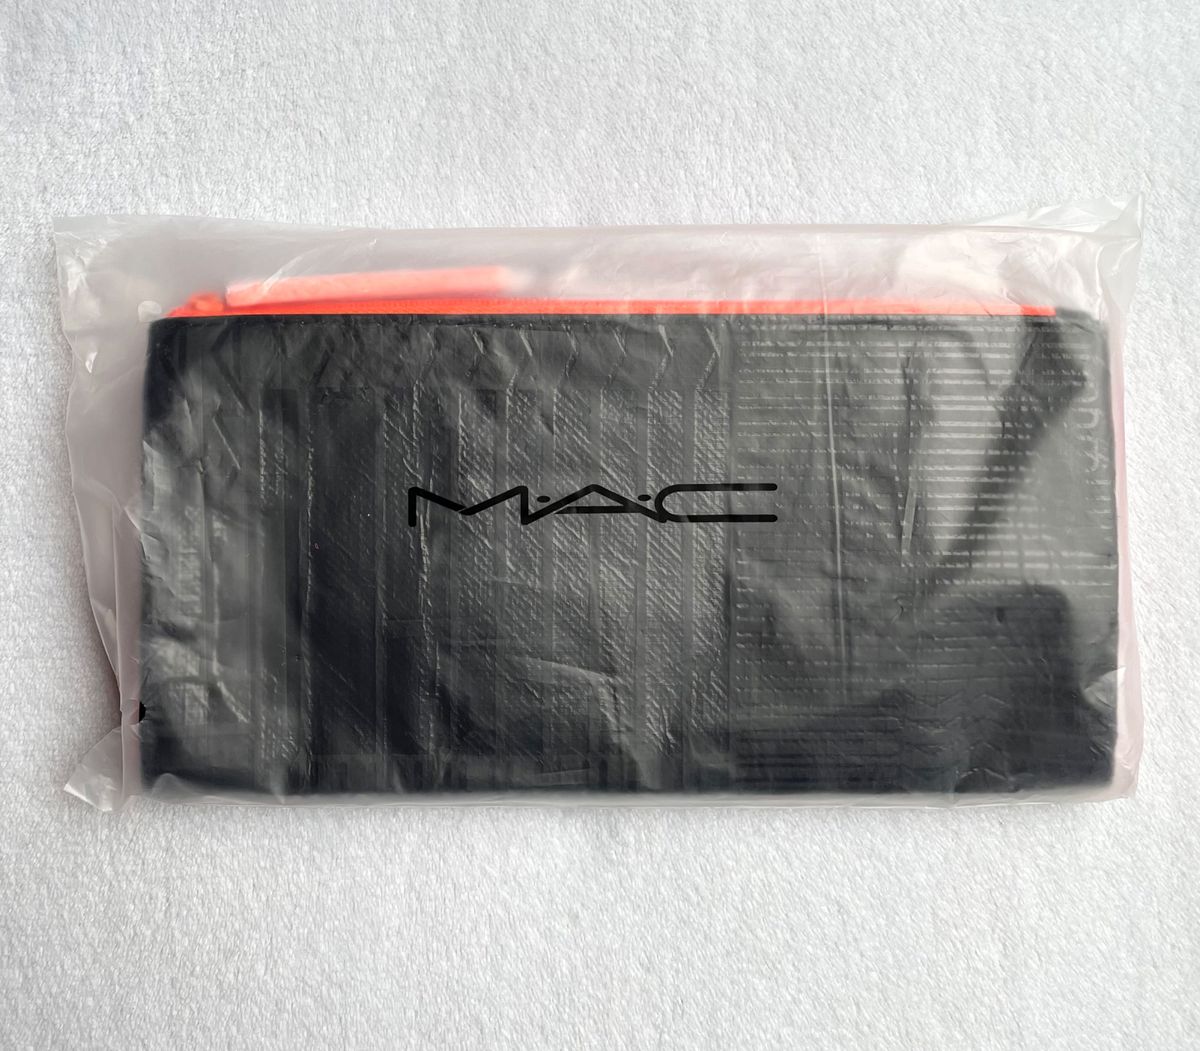 MAC マック メッシュ ポーチ ケース メイク コスメ ブラシ 収納 ノベルティ 限定非売品 ブラック ピンク オレンジ 新品